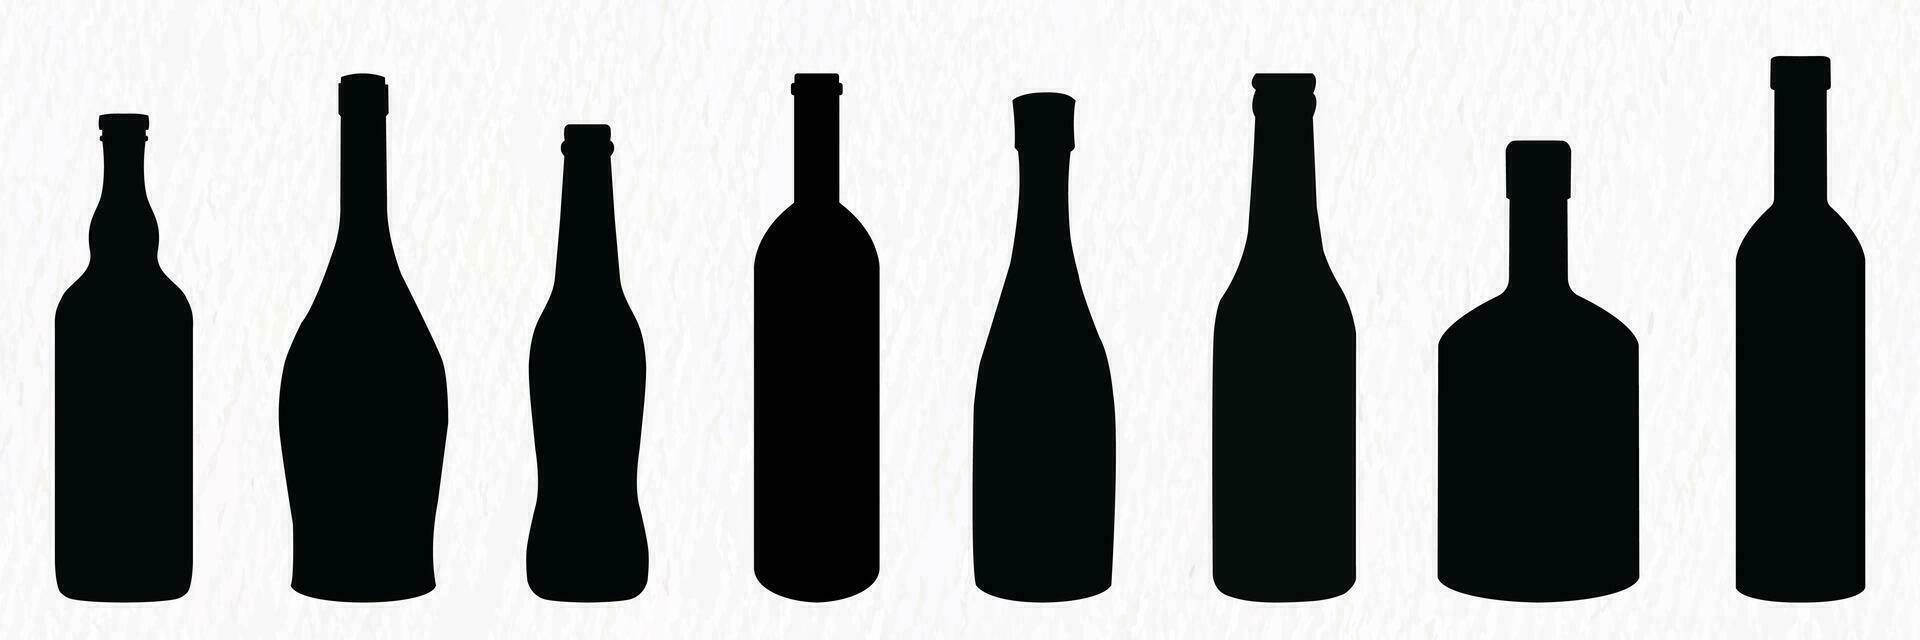 silhouette impostato di alcool bottiglia Compreso vino, birra, Champagne, Vodka, bevanda, cocktail, whisky, Brandy, Rum vettore